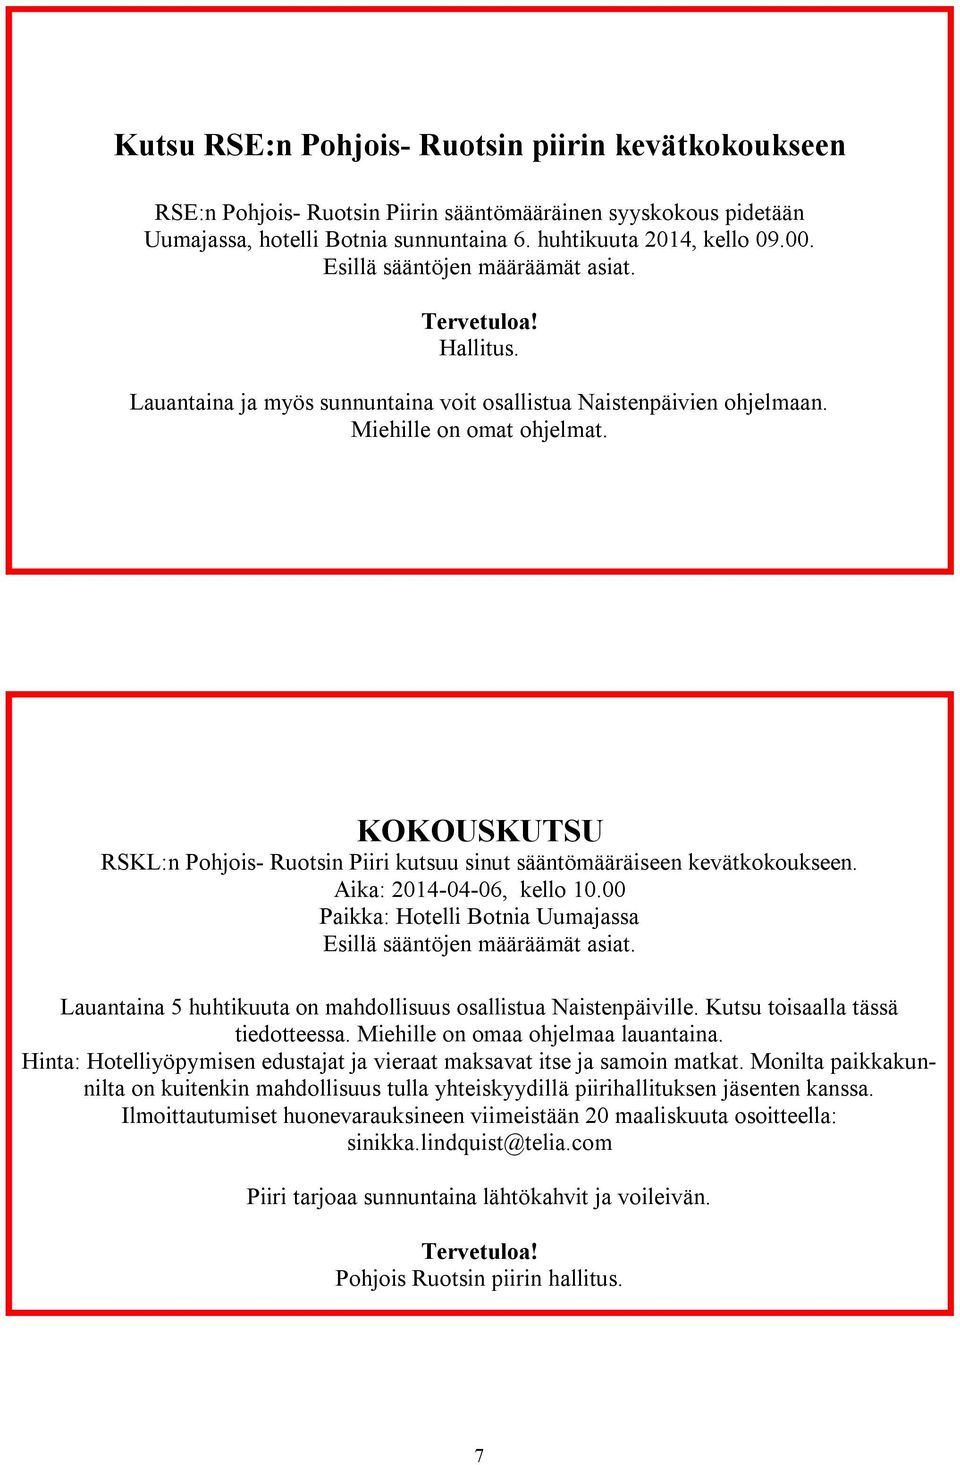 KOKOUSKUTSU RSKL:n Pohjois- Ruotsin Piiri kutsuu sinut sääntömääräiseen kevätkokoukseen. Aika: 2014-04-06, kello 10.00 Paikka: Hotelli Botnia Uumajassa Esillä sääntöjen määräämät asiat.